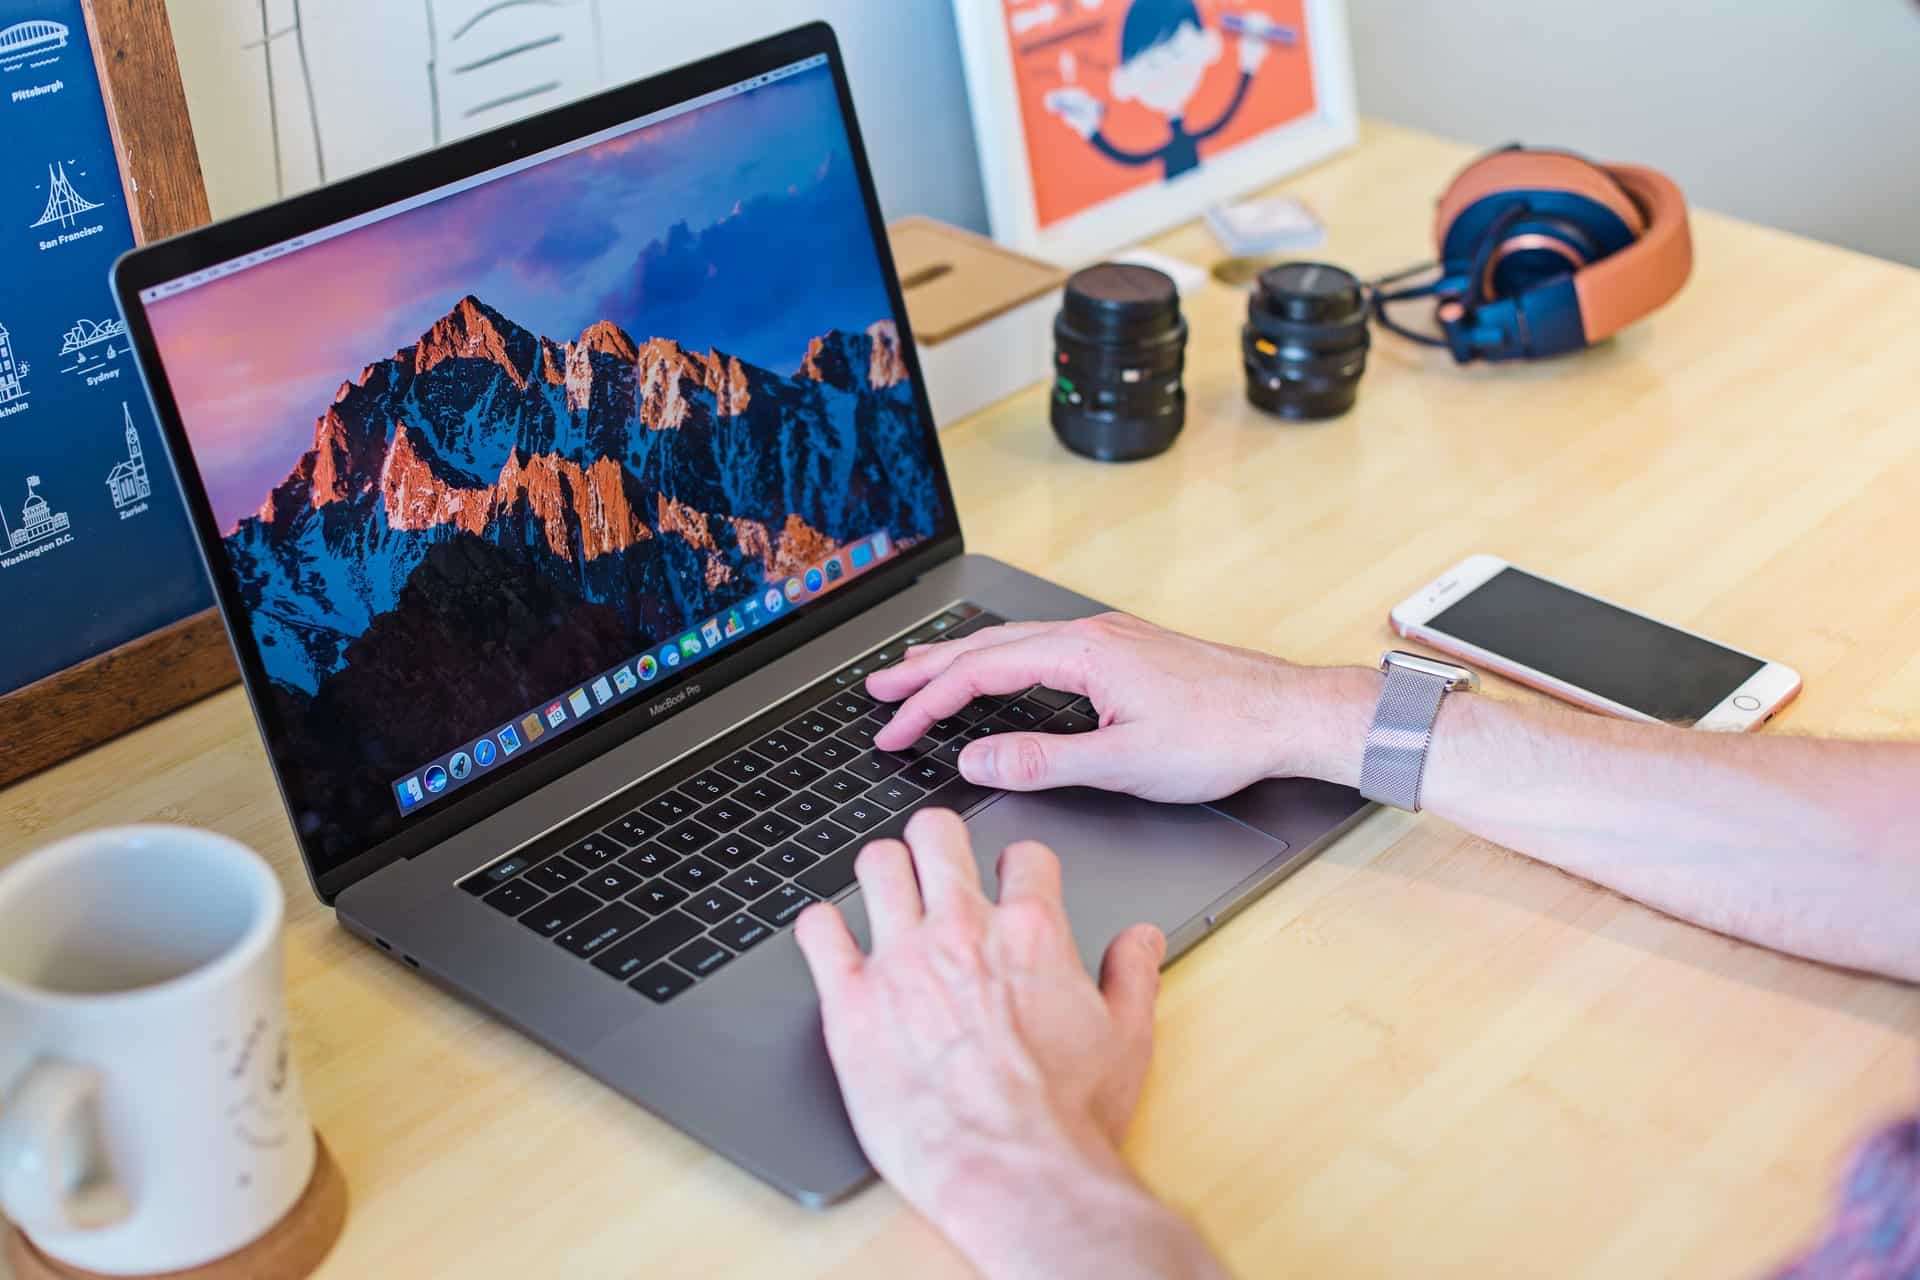 les mains d'une personne sur un clavier d'un macbook